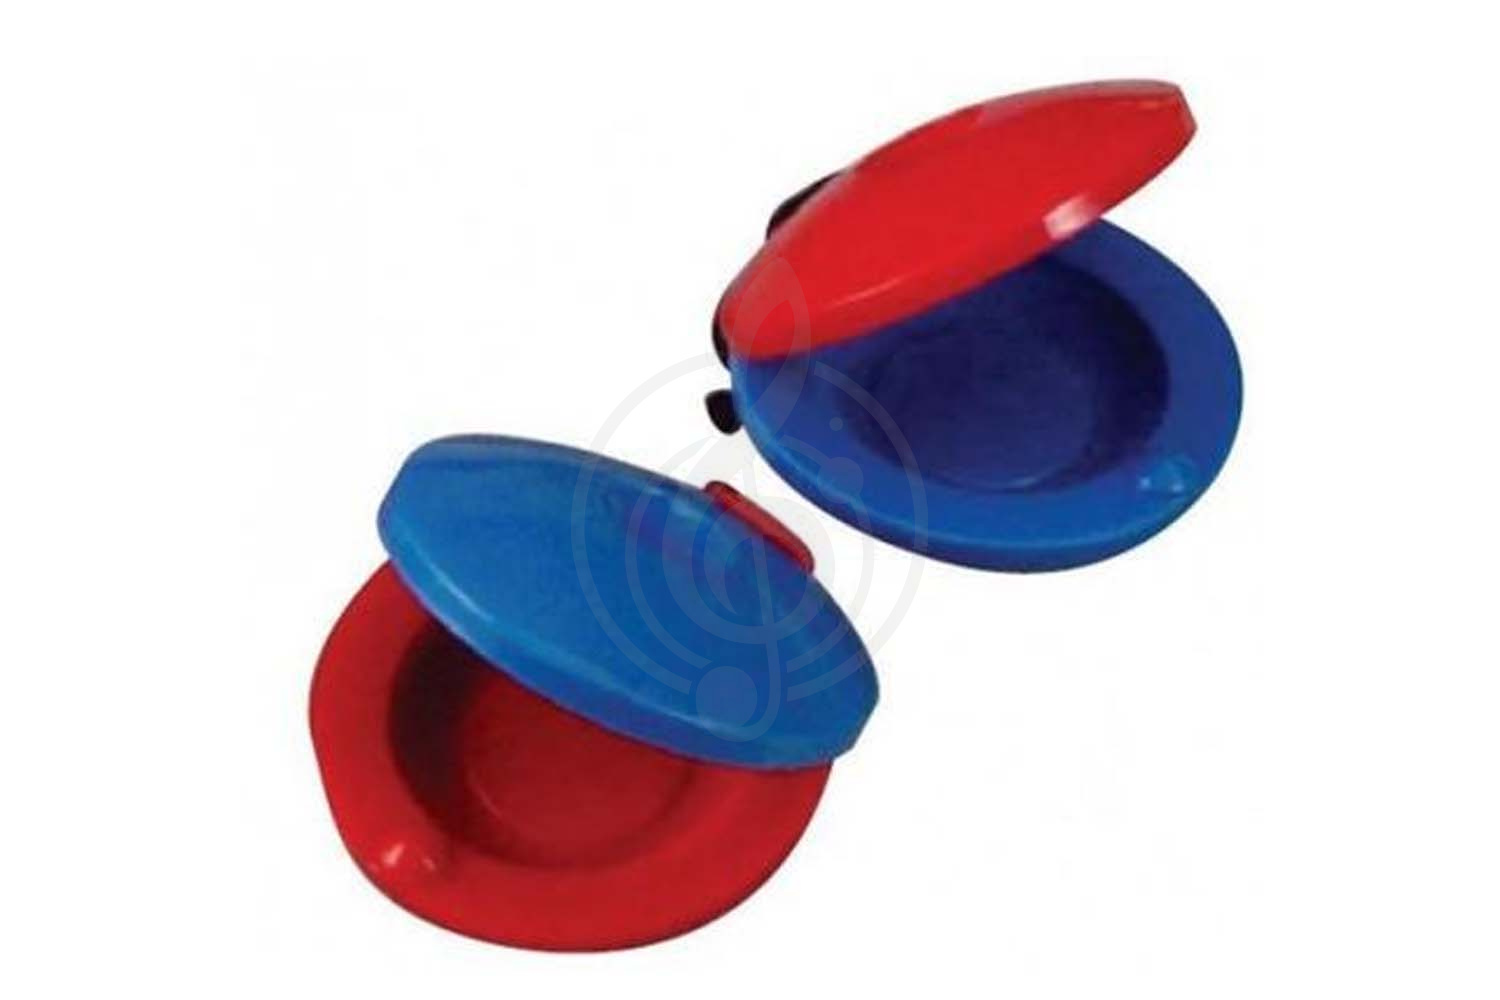 Кастаньеты Кастаньеты BRAHNER DP-146 пластиковые, цвет комбинированный (красный + синий), 6 см, Brahner DP-146 в магазине DominantaMusic - фото 1